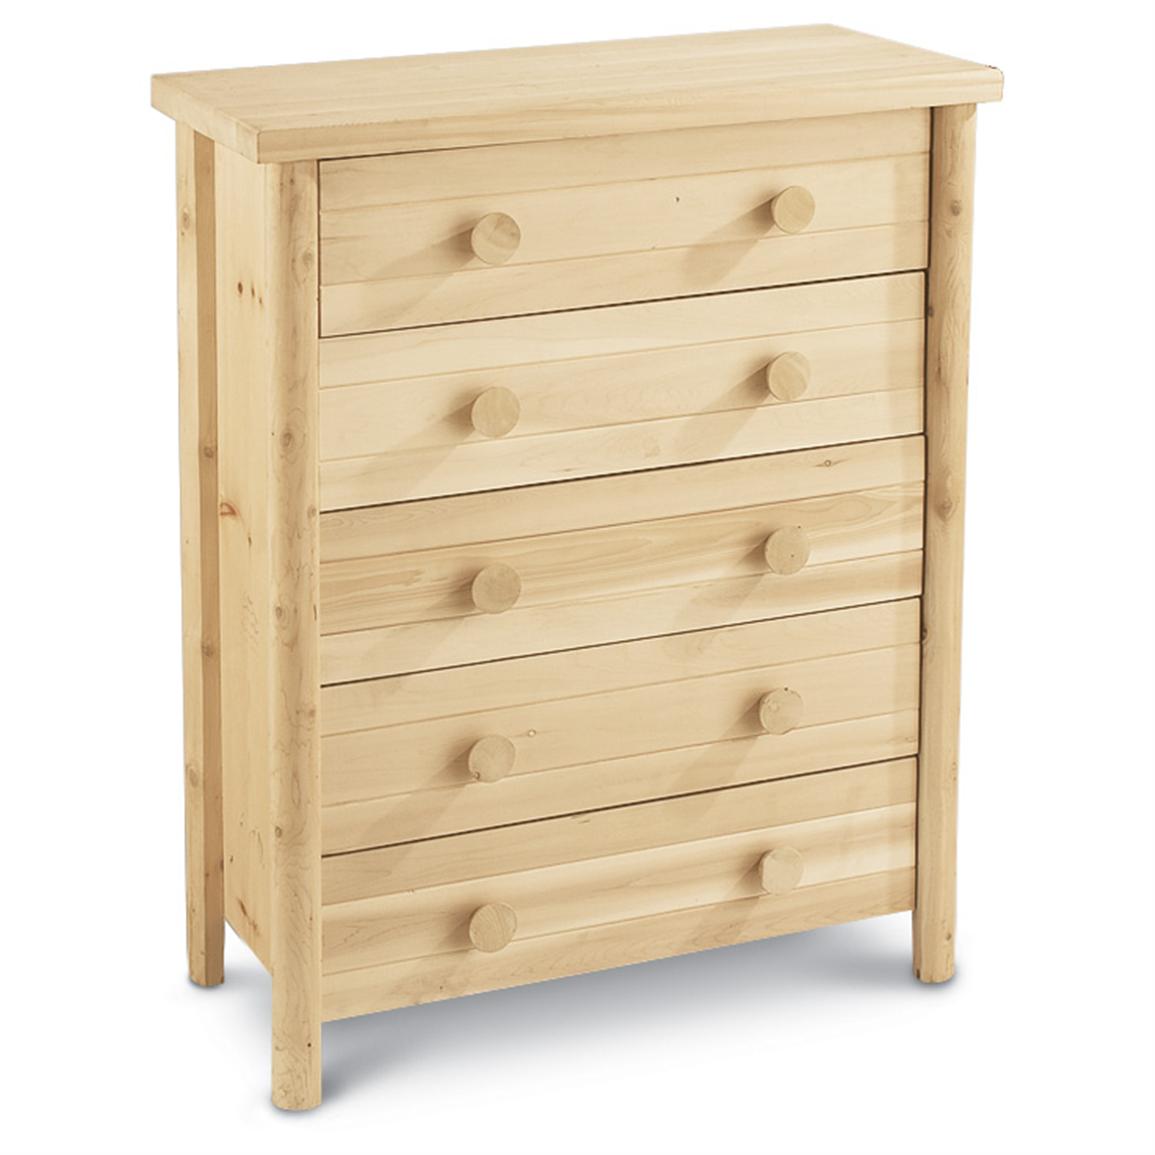 Castlecreek Cedar Log 5 Drawer Dresser 66413 Bedroom Furniture